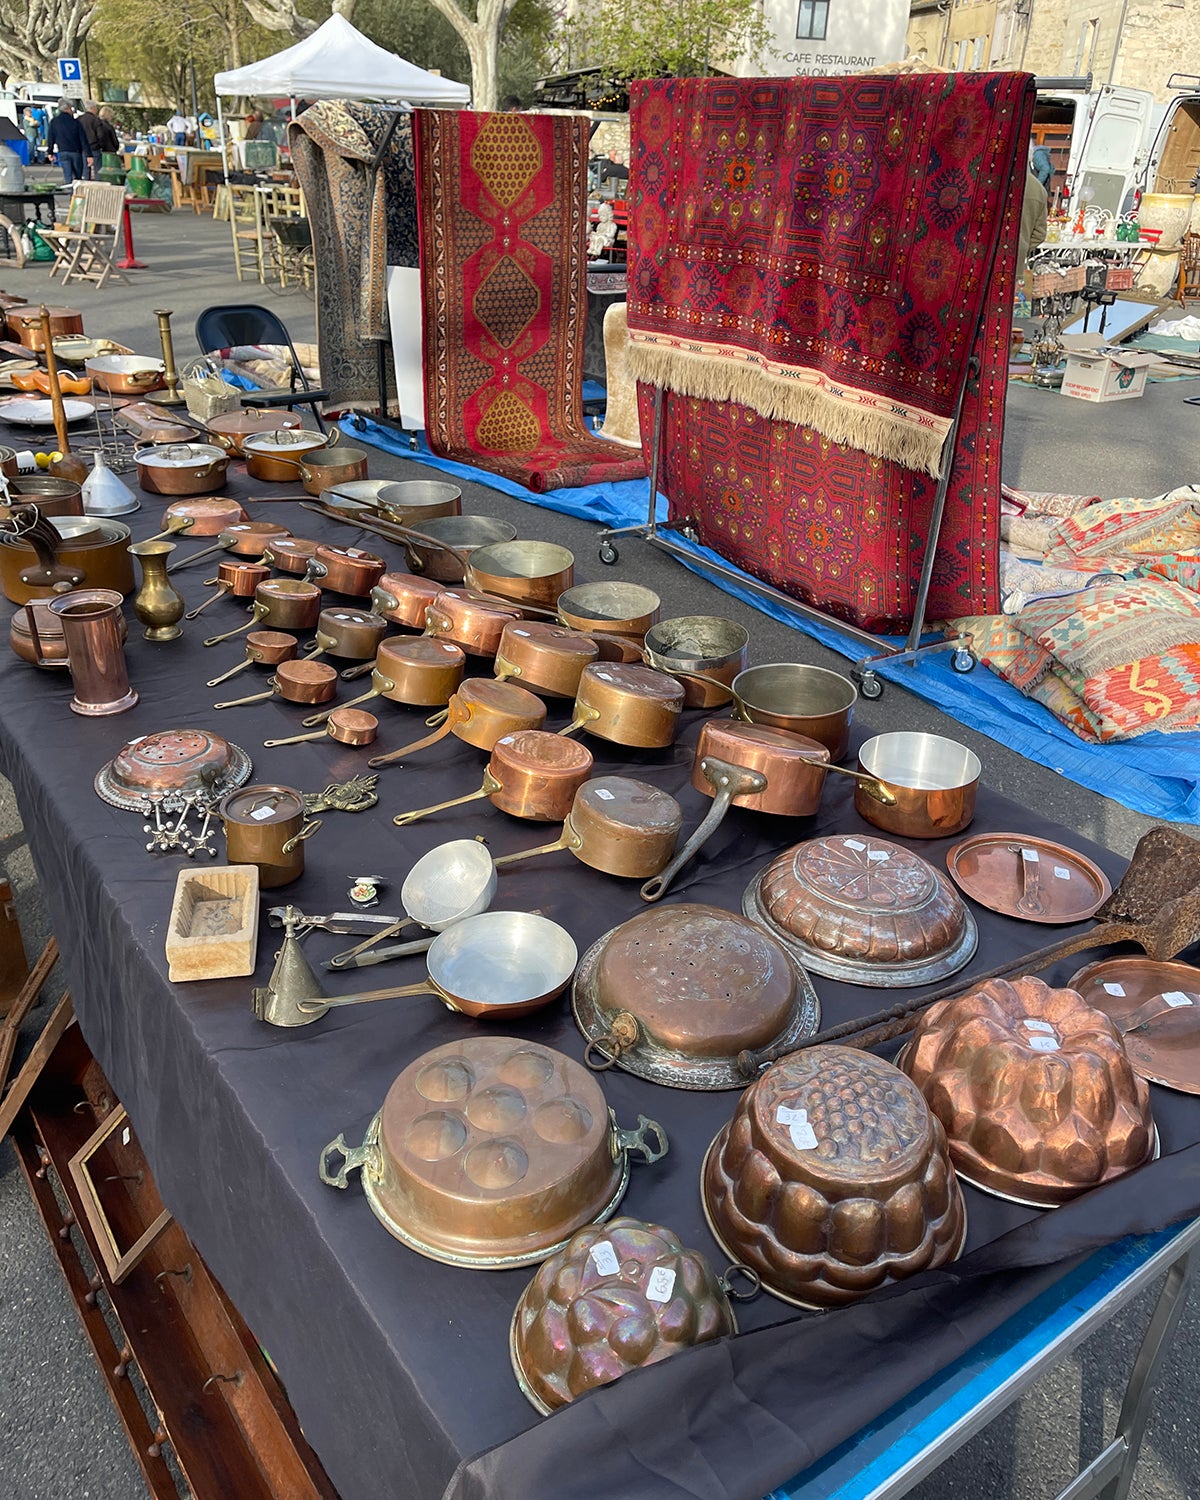 Table full of copper pots at a flea market